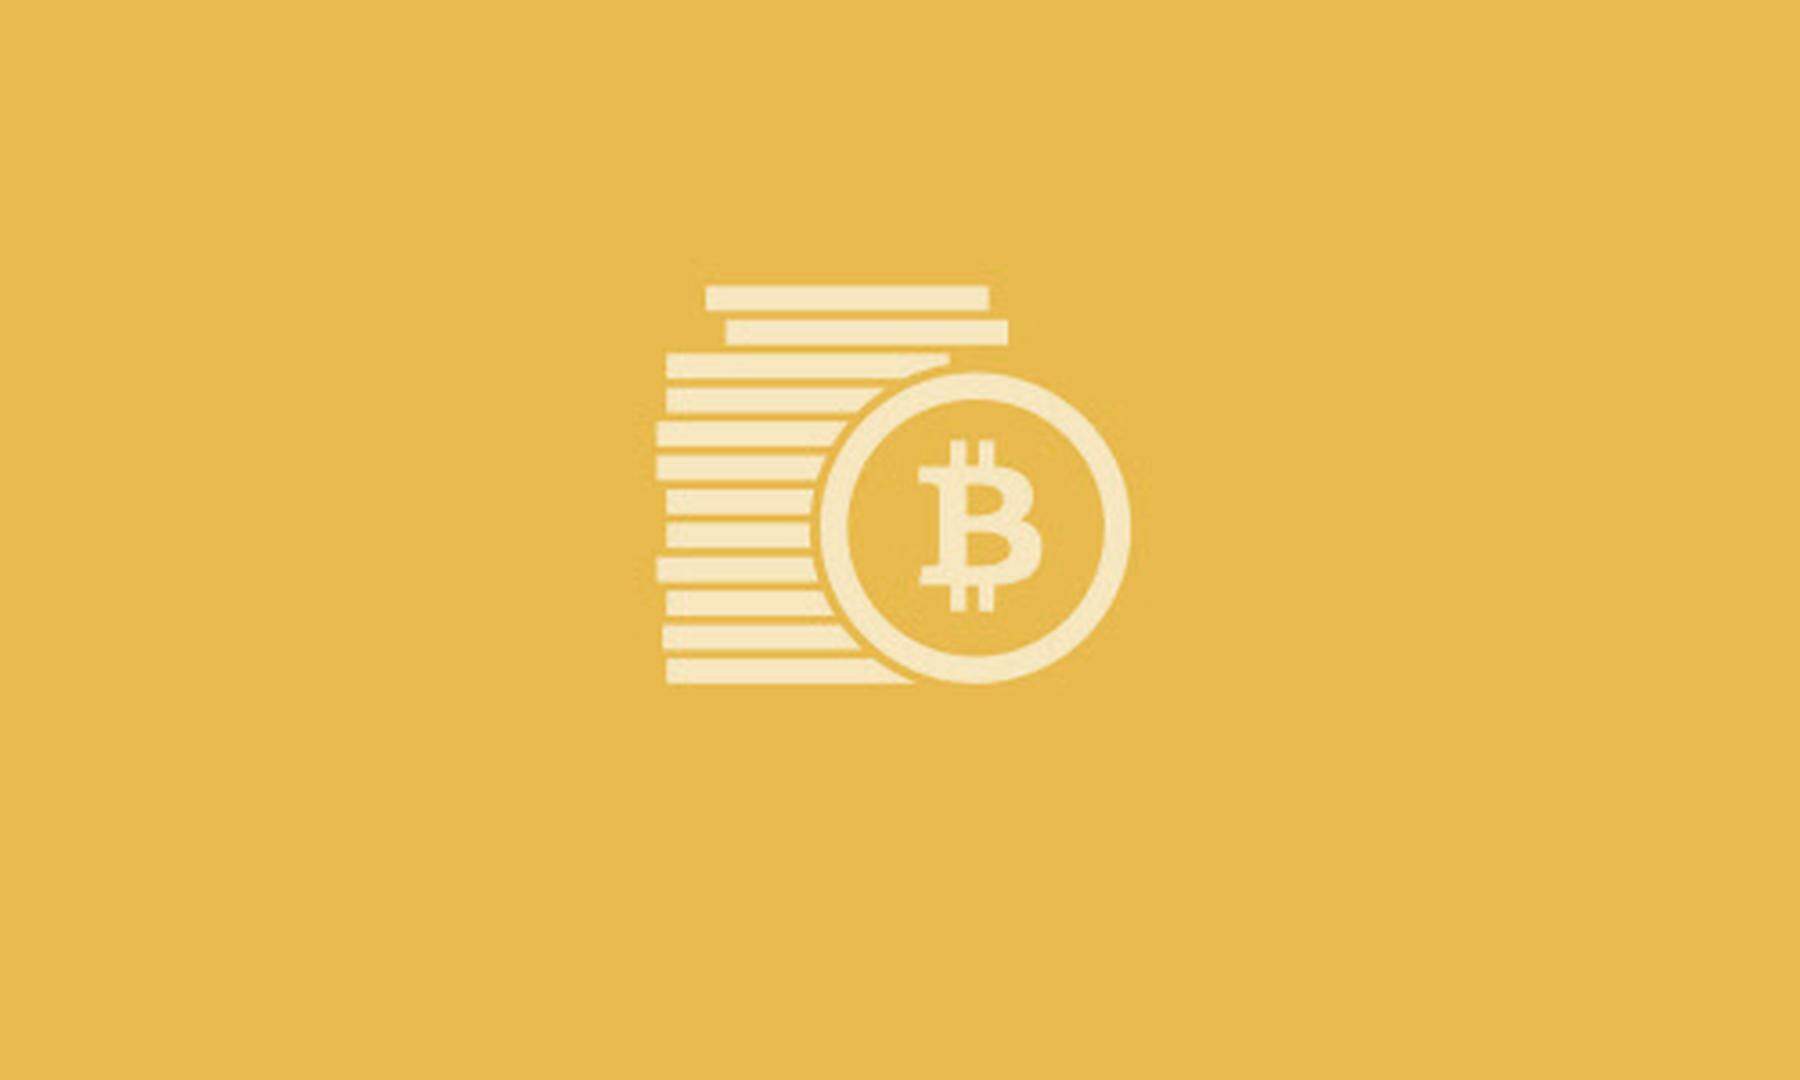 microstrategy, coinbase und co.: soll man aktien statt bitcoin kaufen?